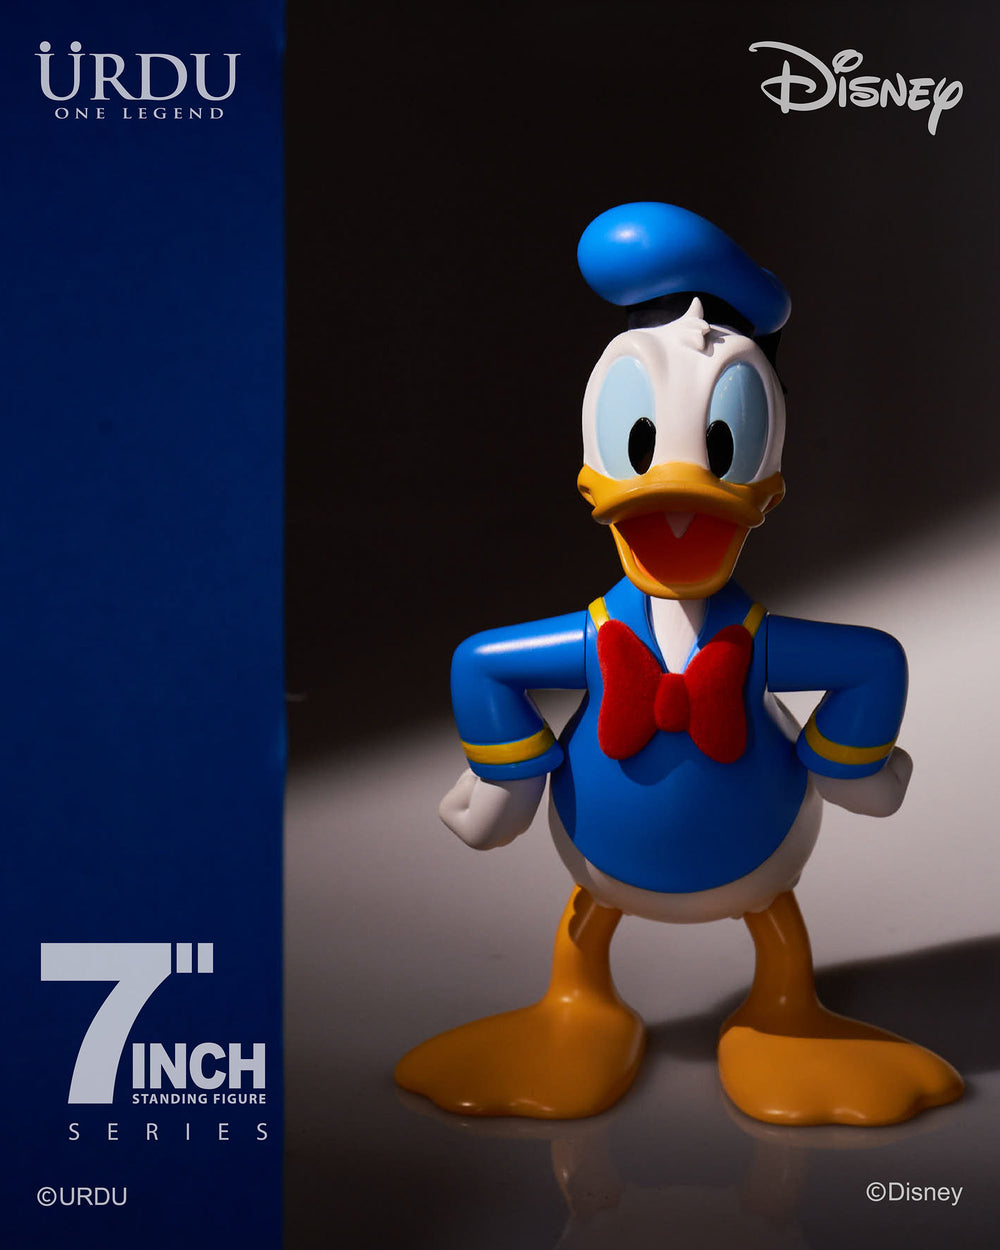 URDU 7 Inch Standing Figure - Donald Duck